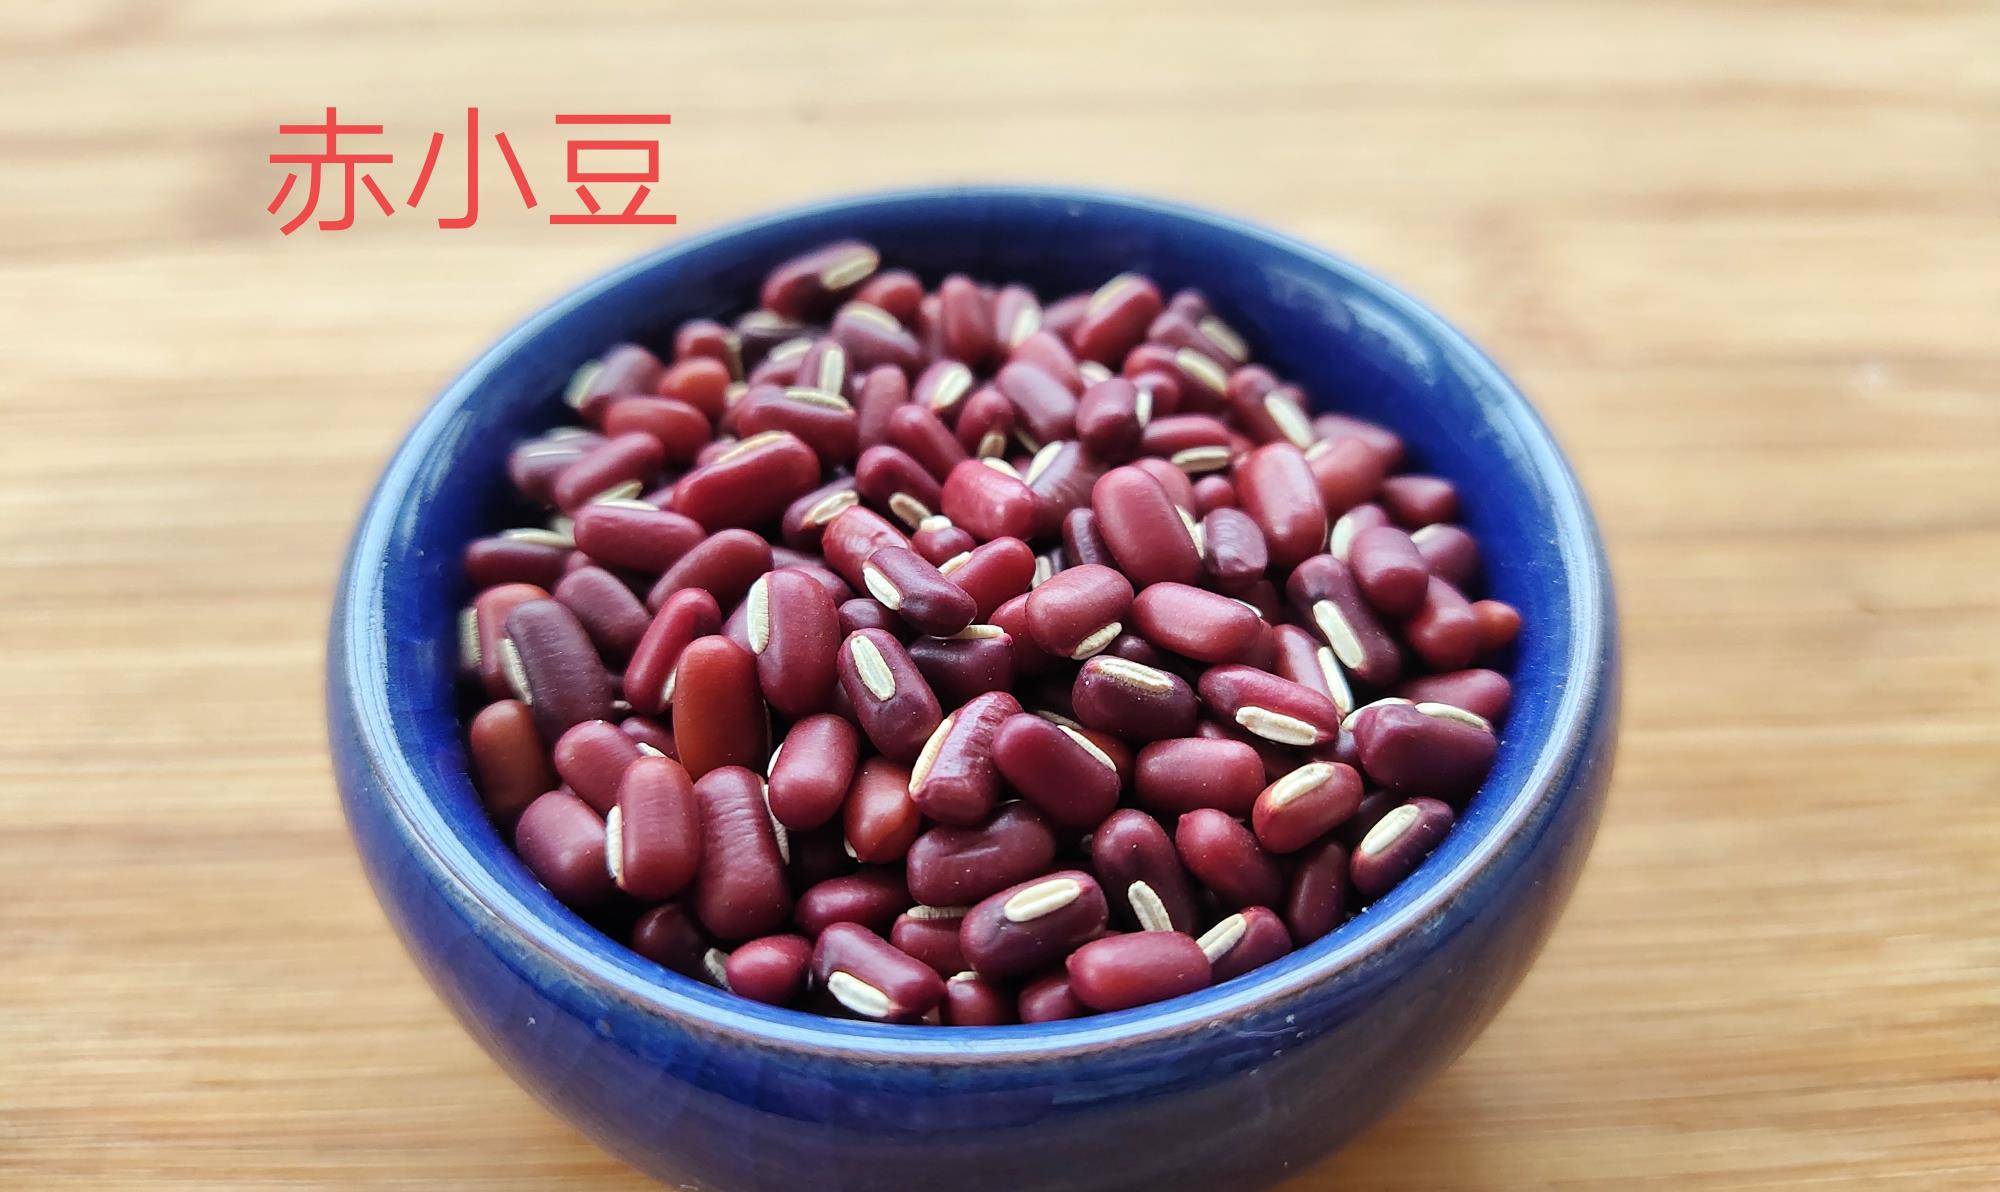 两种红豆可以从外观上加以区分,赤小豆细长颗粒比红豆小,看上图,而